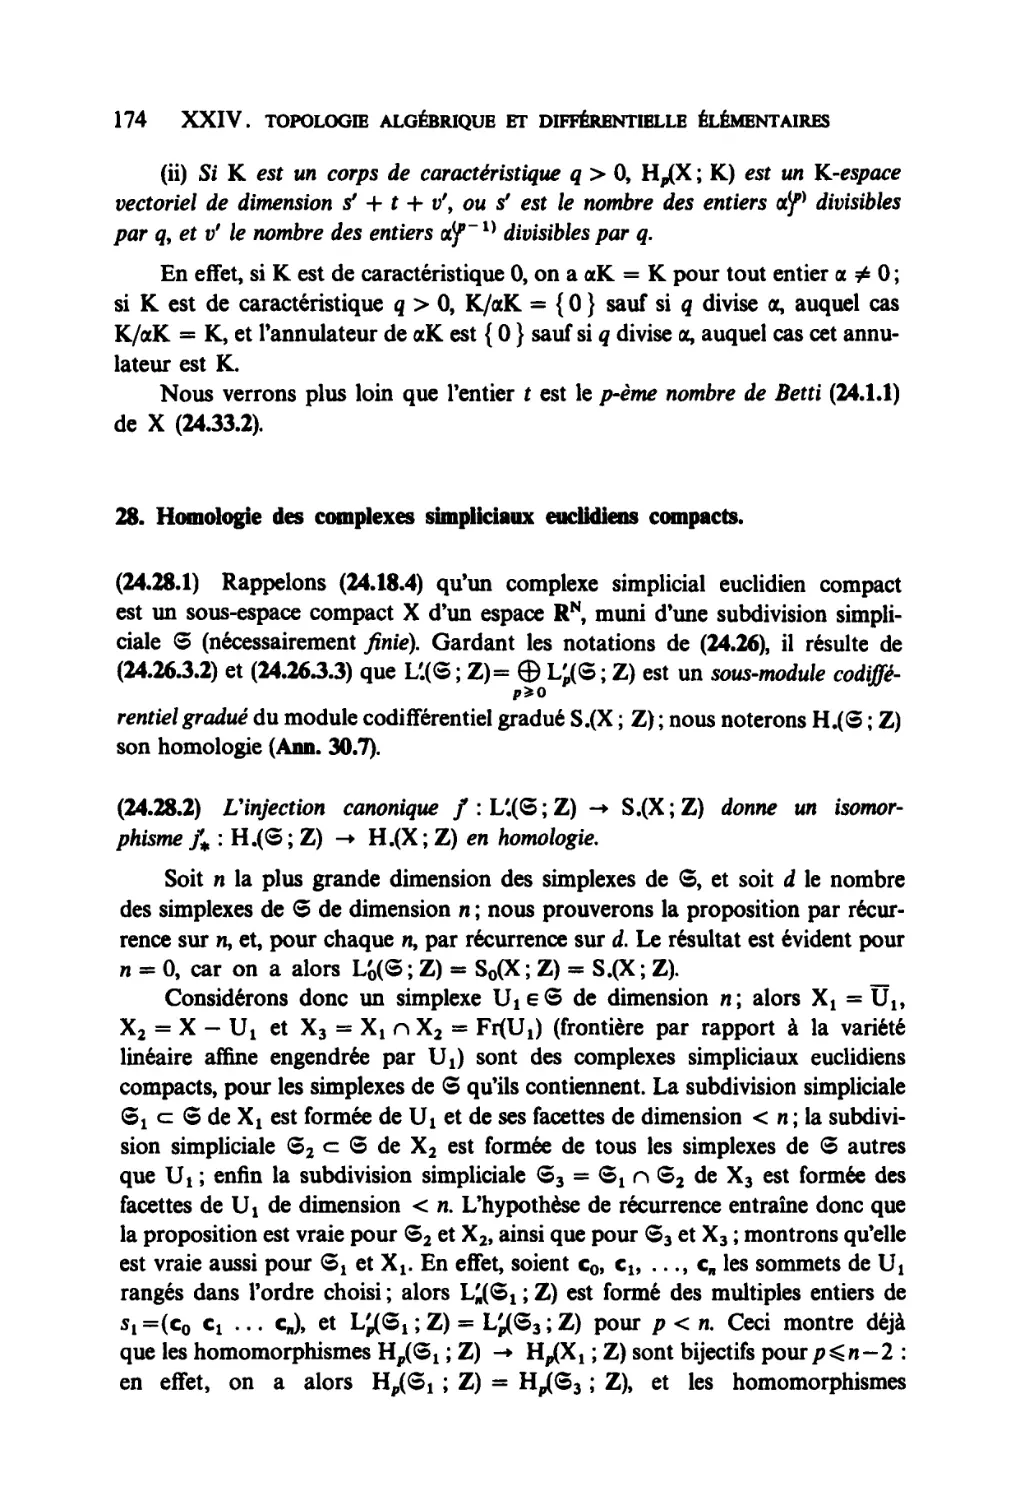 28. Homologie des complexes simpliciaux euclidiens compacts